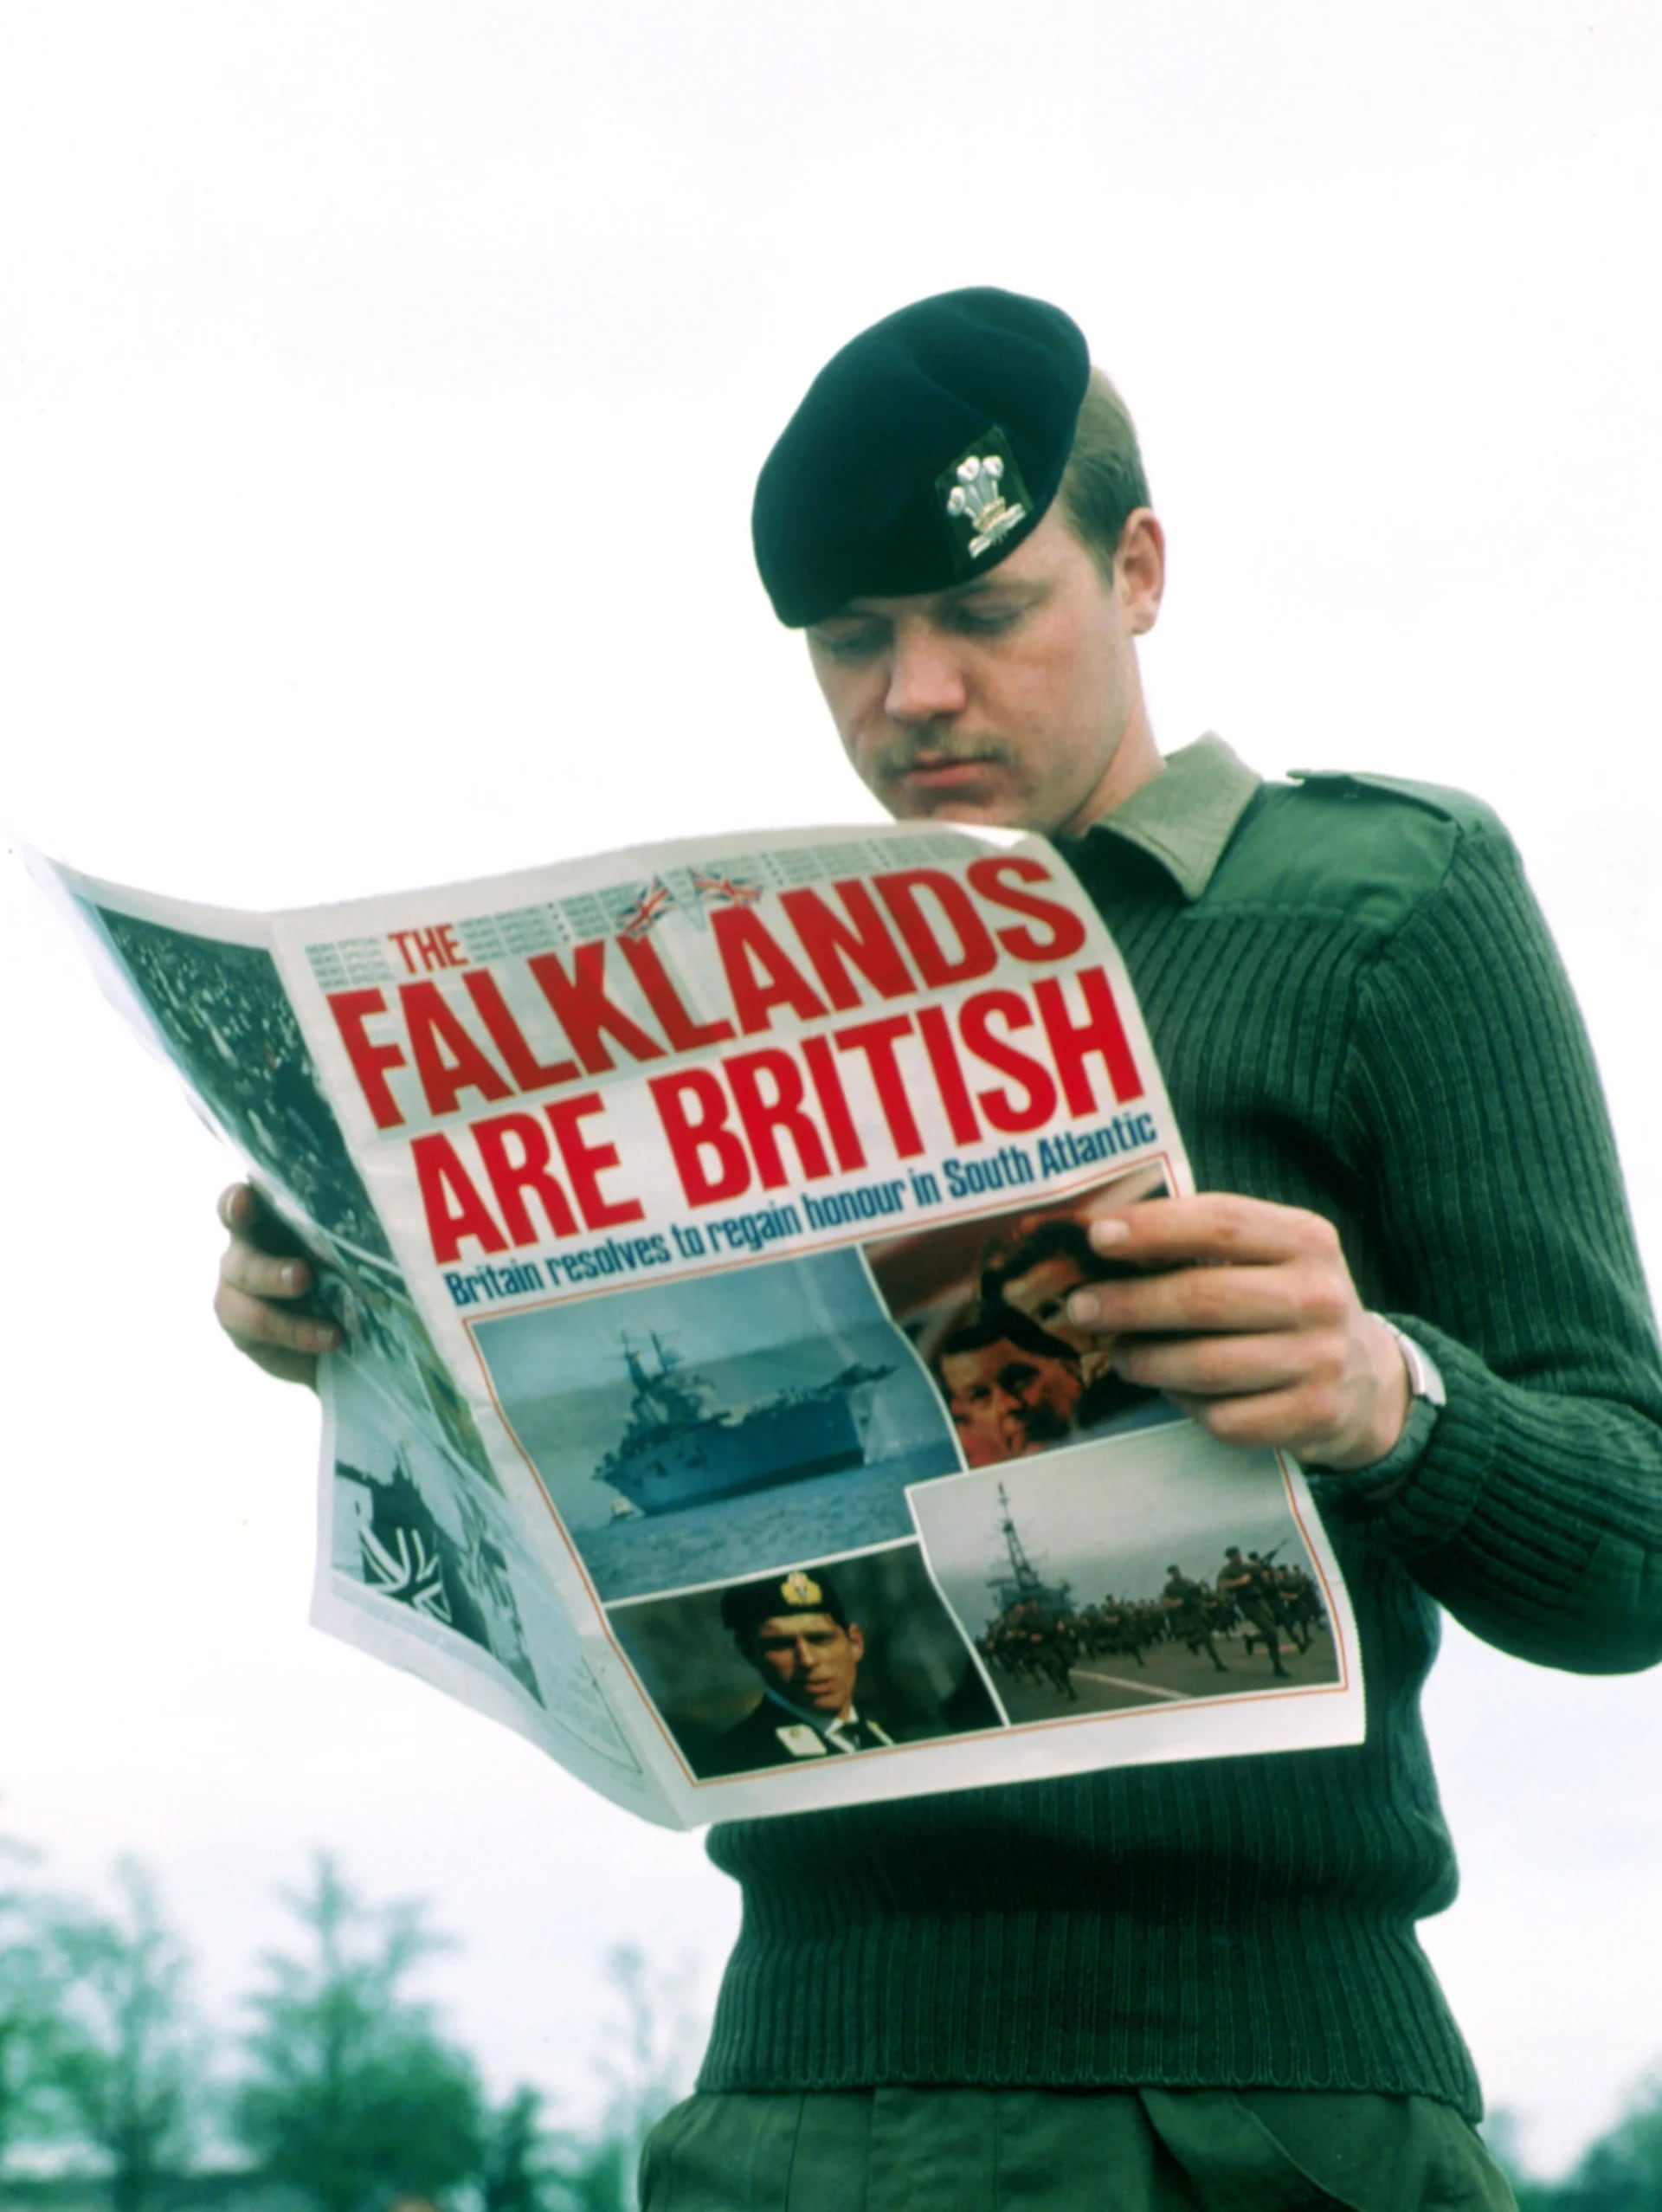 Un soldado británico lee el diario luego de la recuperación argentina de las Islas Malvinas: “Las Falklands son británicas. Gran Bretaña resuelve recuperar el honor en el Atlántico Sur”, dice el titular en letra catástrofe (Liaison)